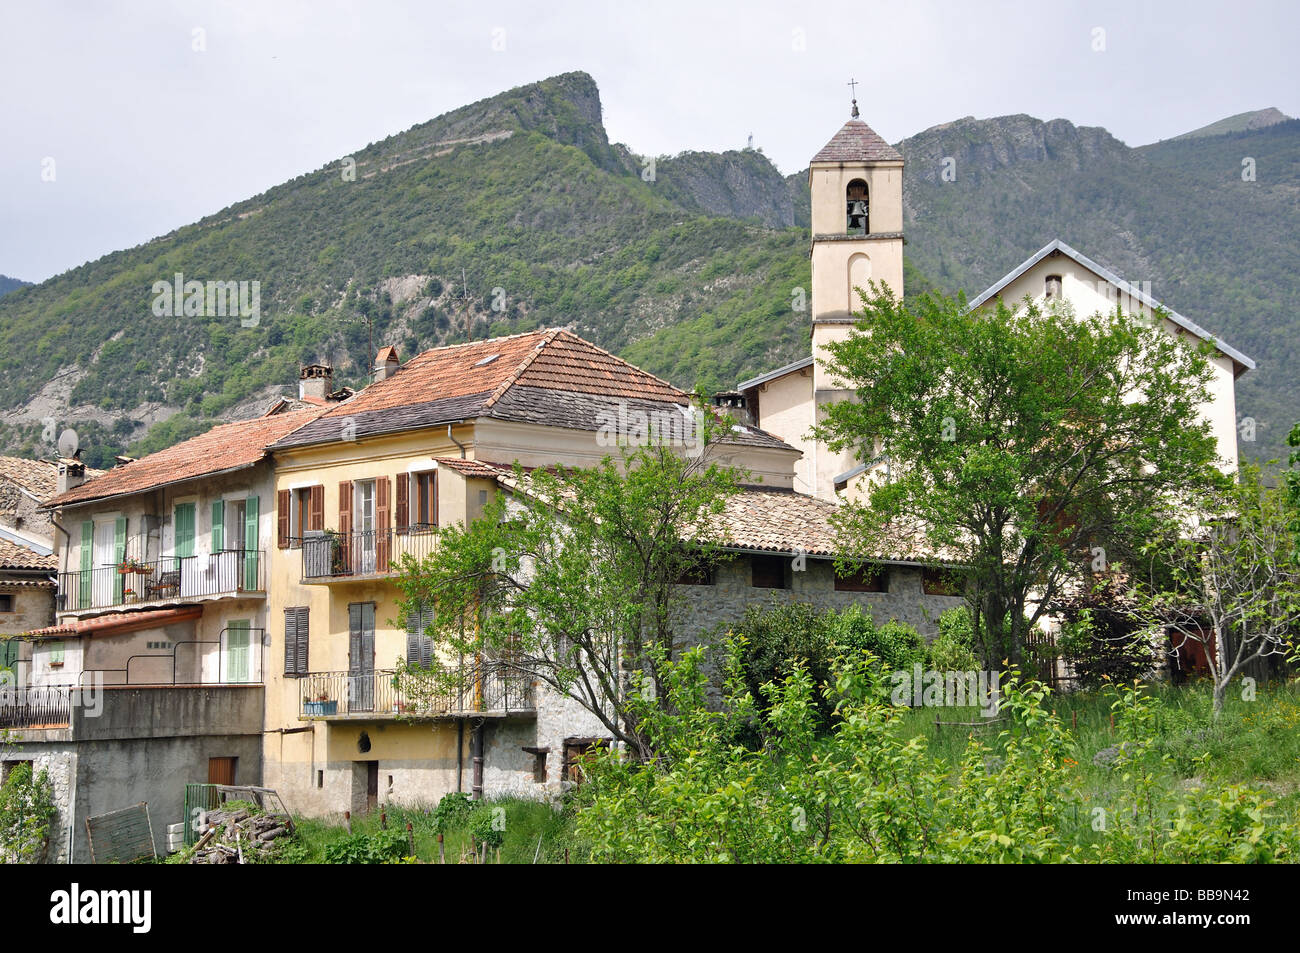 Le village de Marie sur Tinee dans les Alpes Maritimes, France Banque D'Images